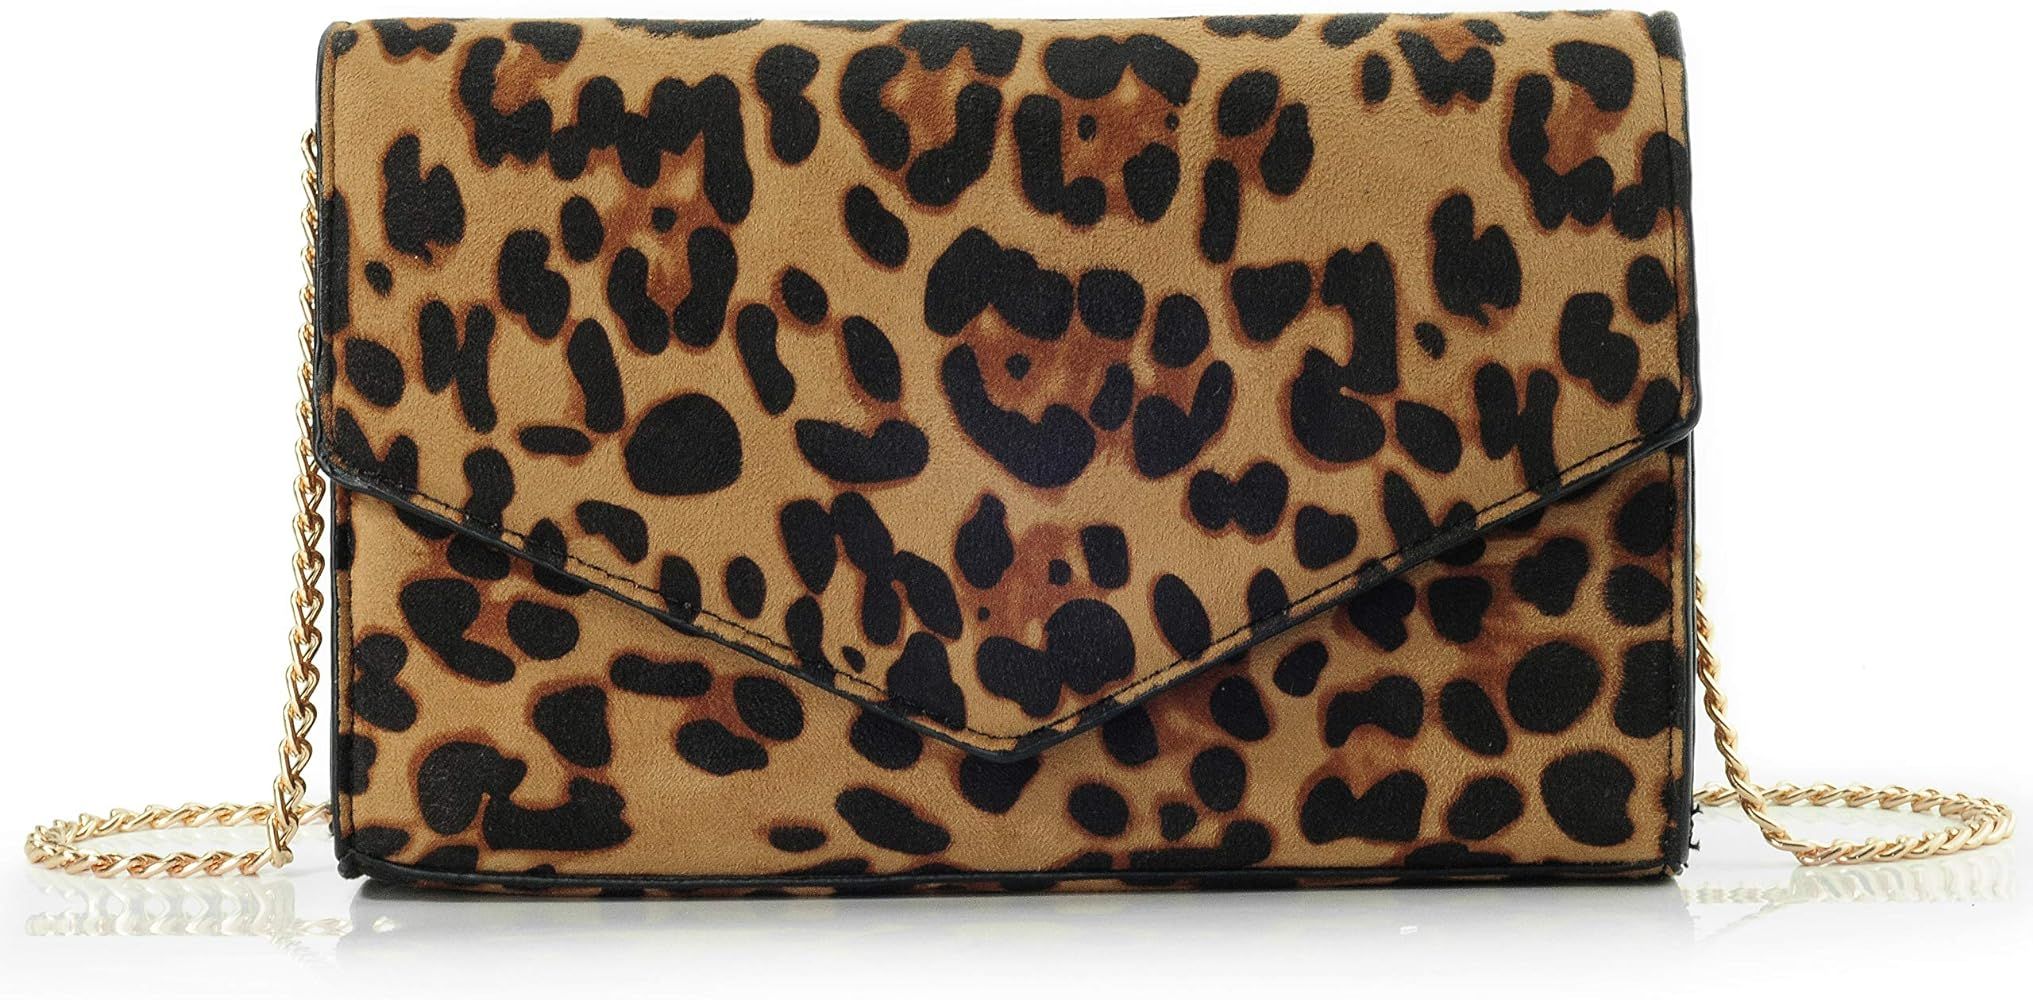 Leopard Print Envelope Evening Clutch Women Chain Shoulder Bag | Amazon (US)